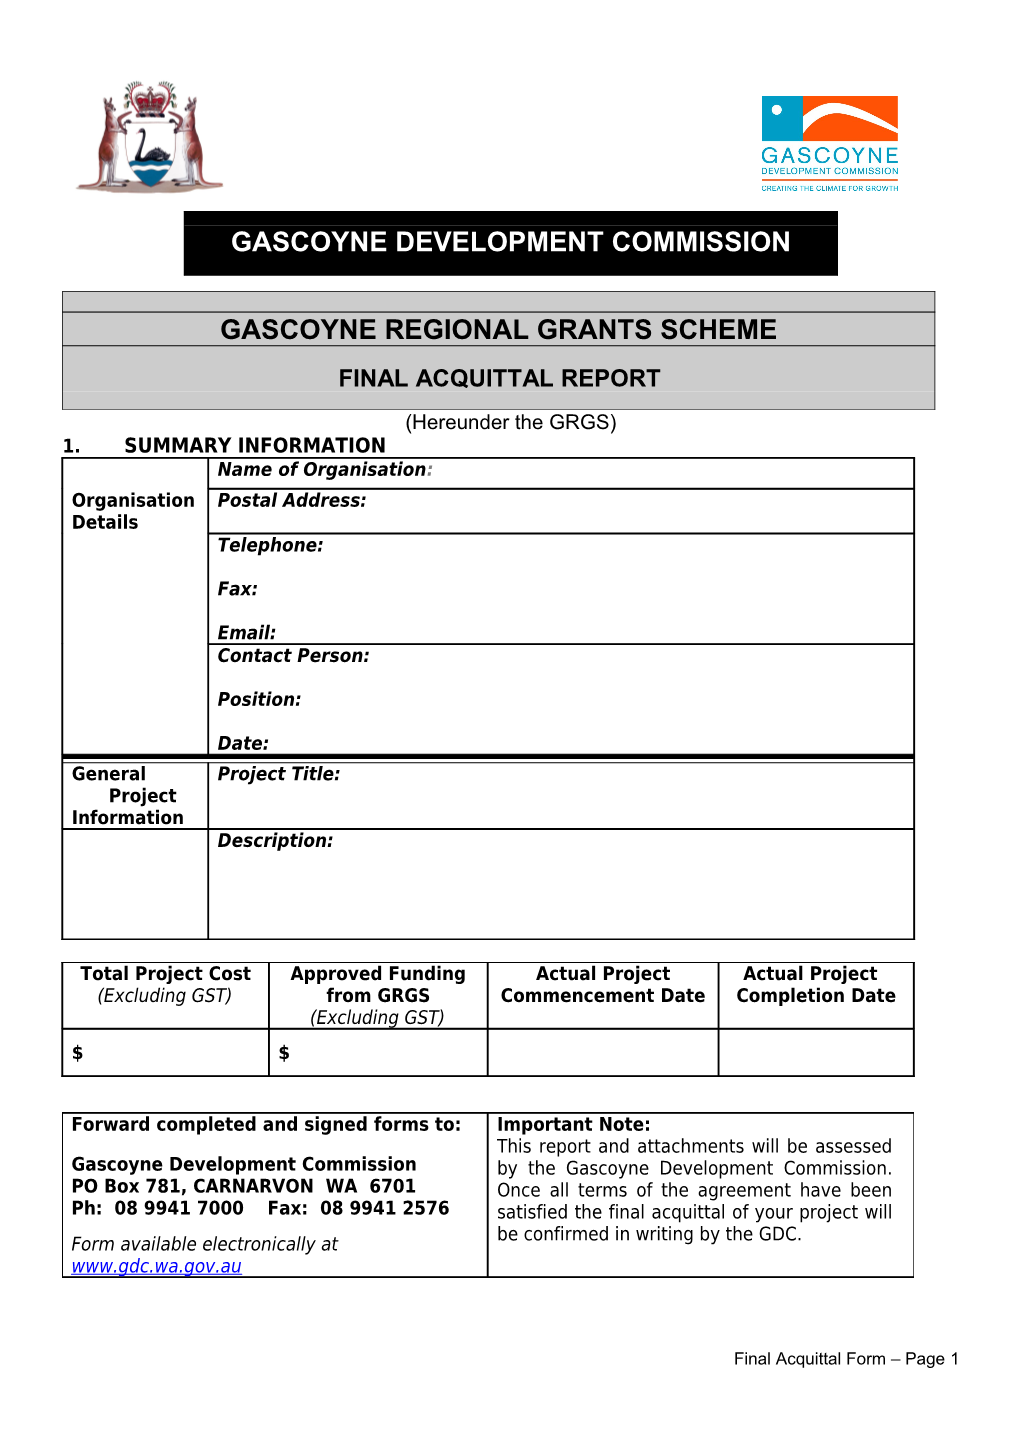 Gascoyne Development Commission